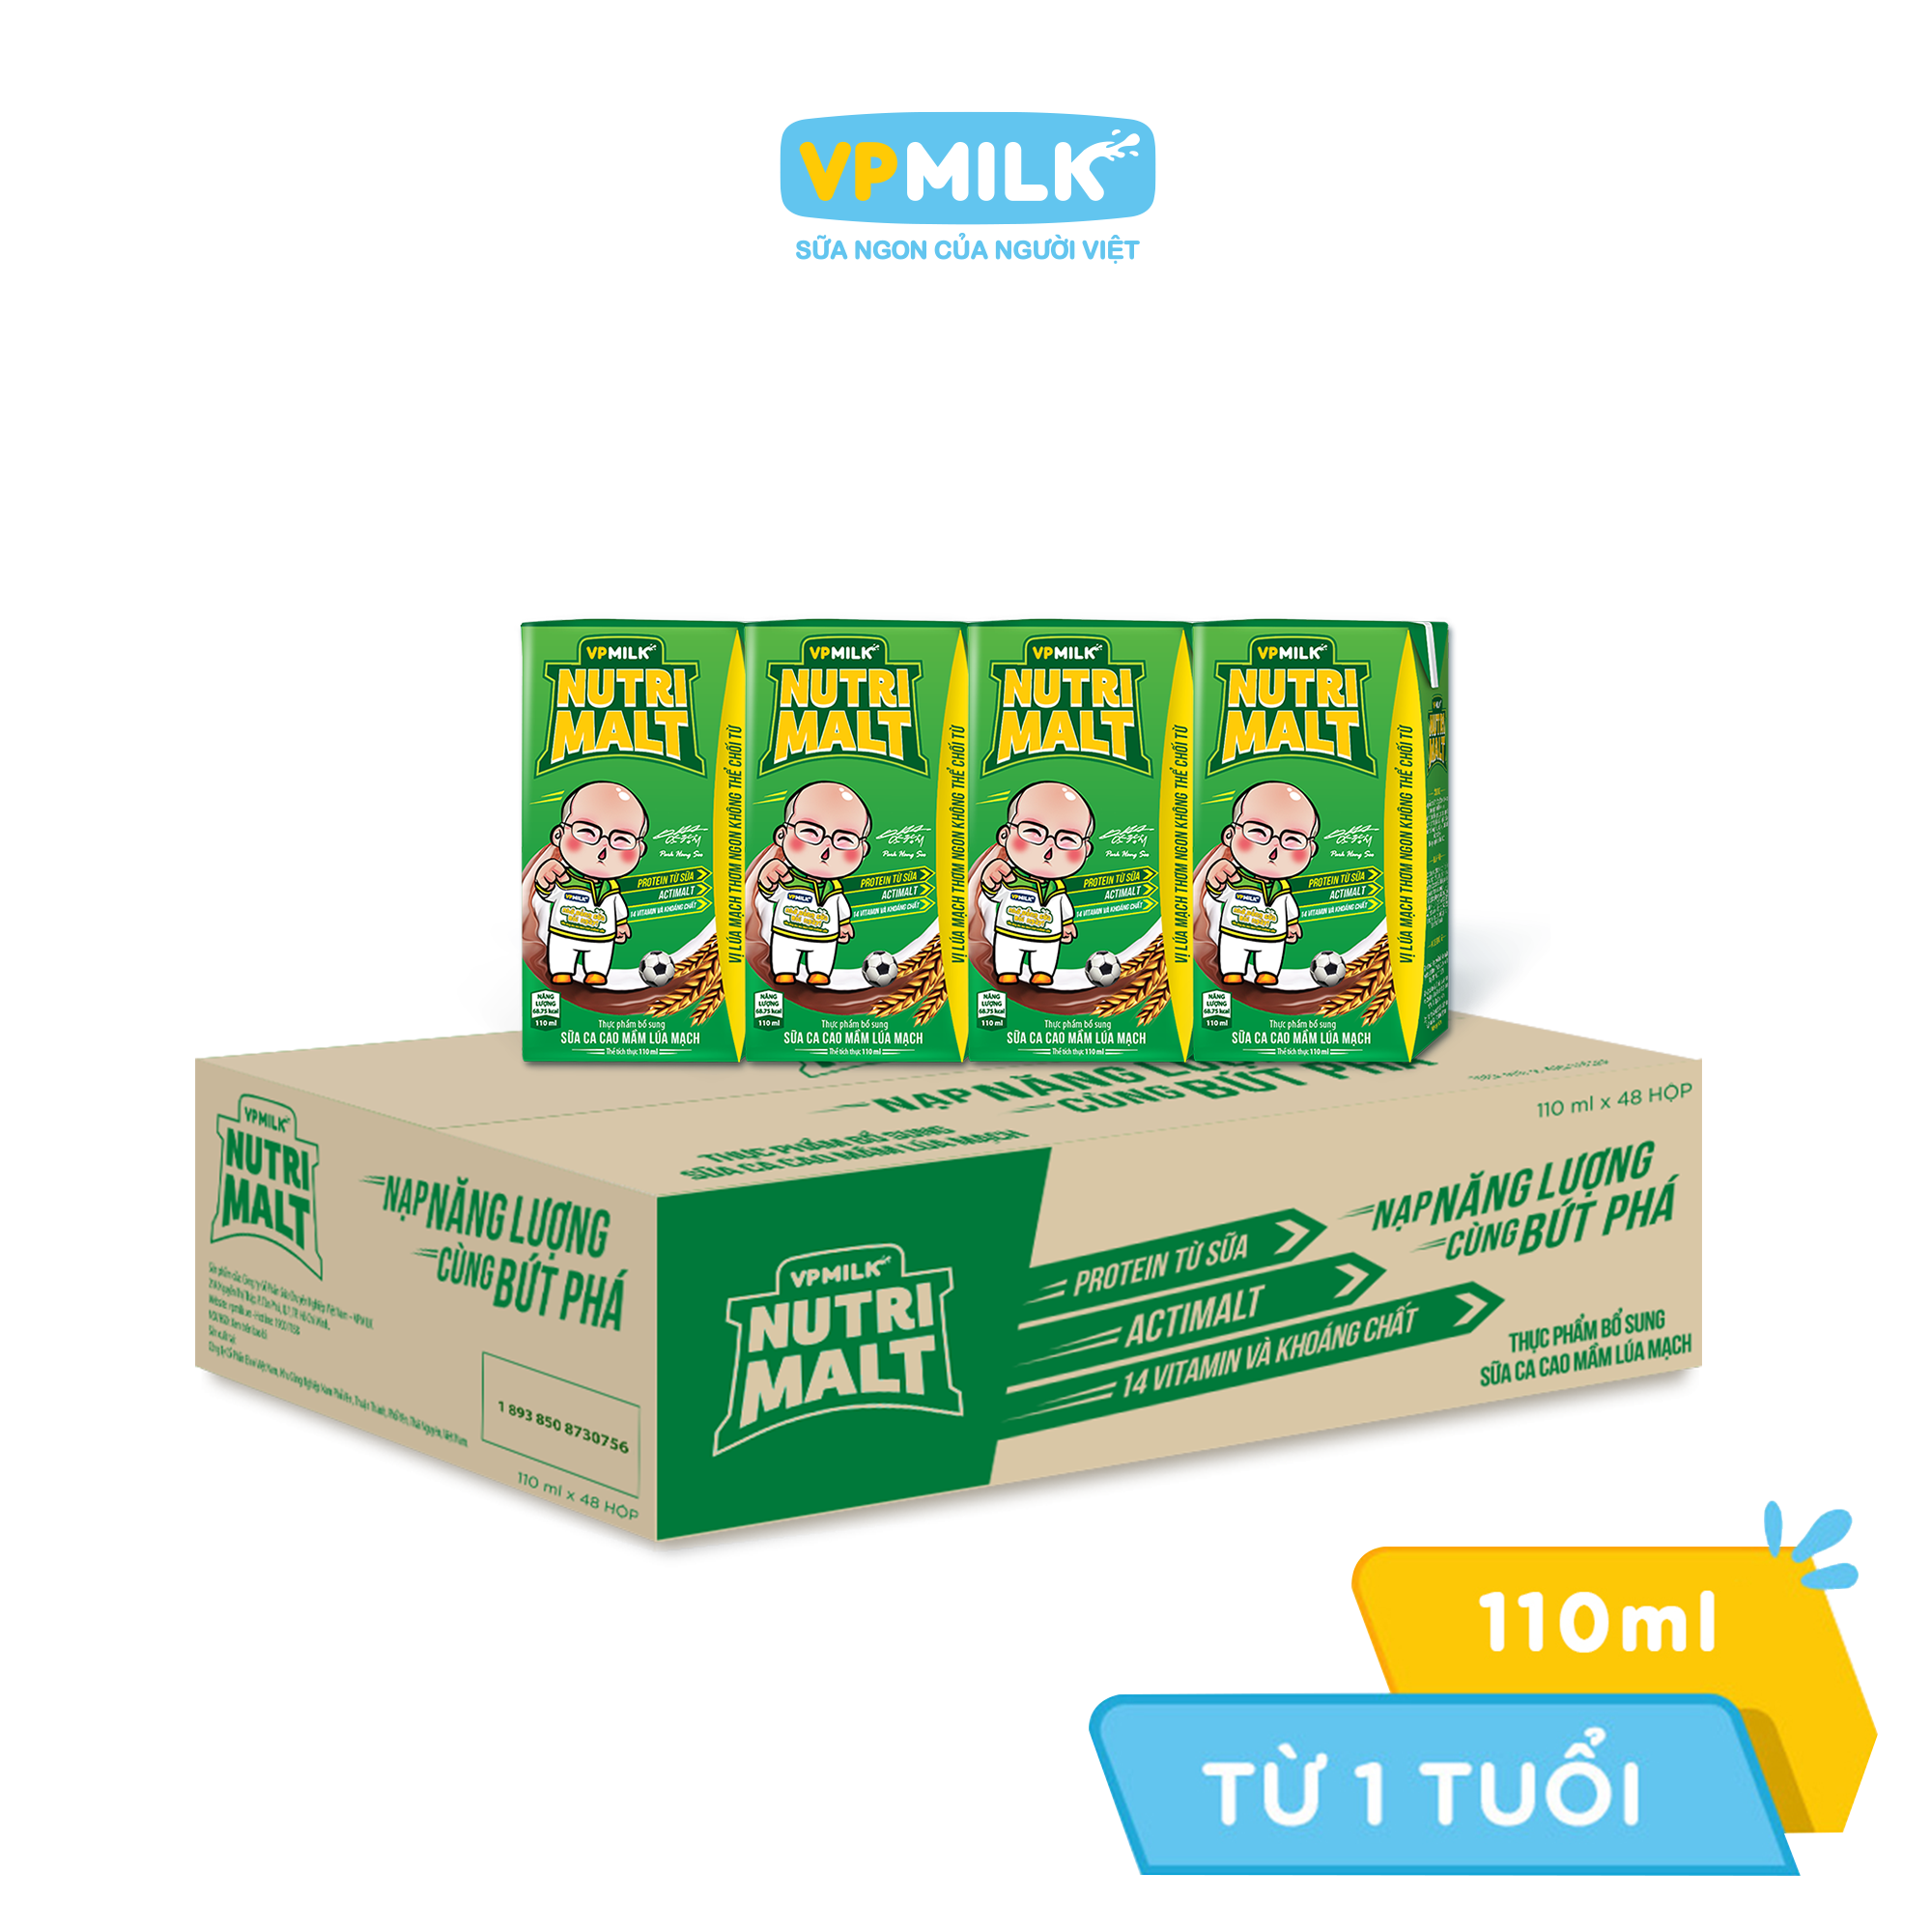 Hình ảnh Sữa Ca Cao Mầm Lúa Mạch Đen – VPMilk Nutrimalt Hộp 110ml (Thùng 48 Hộp)